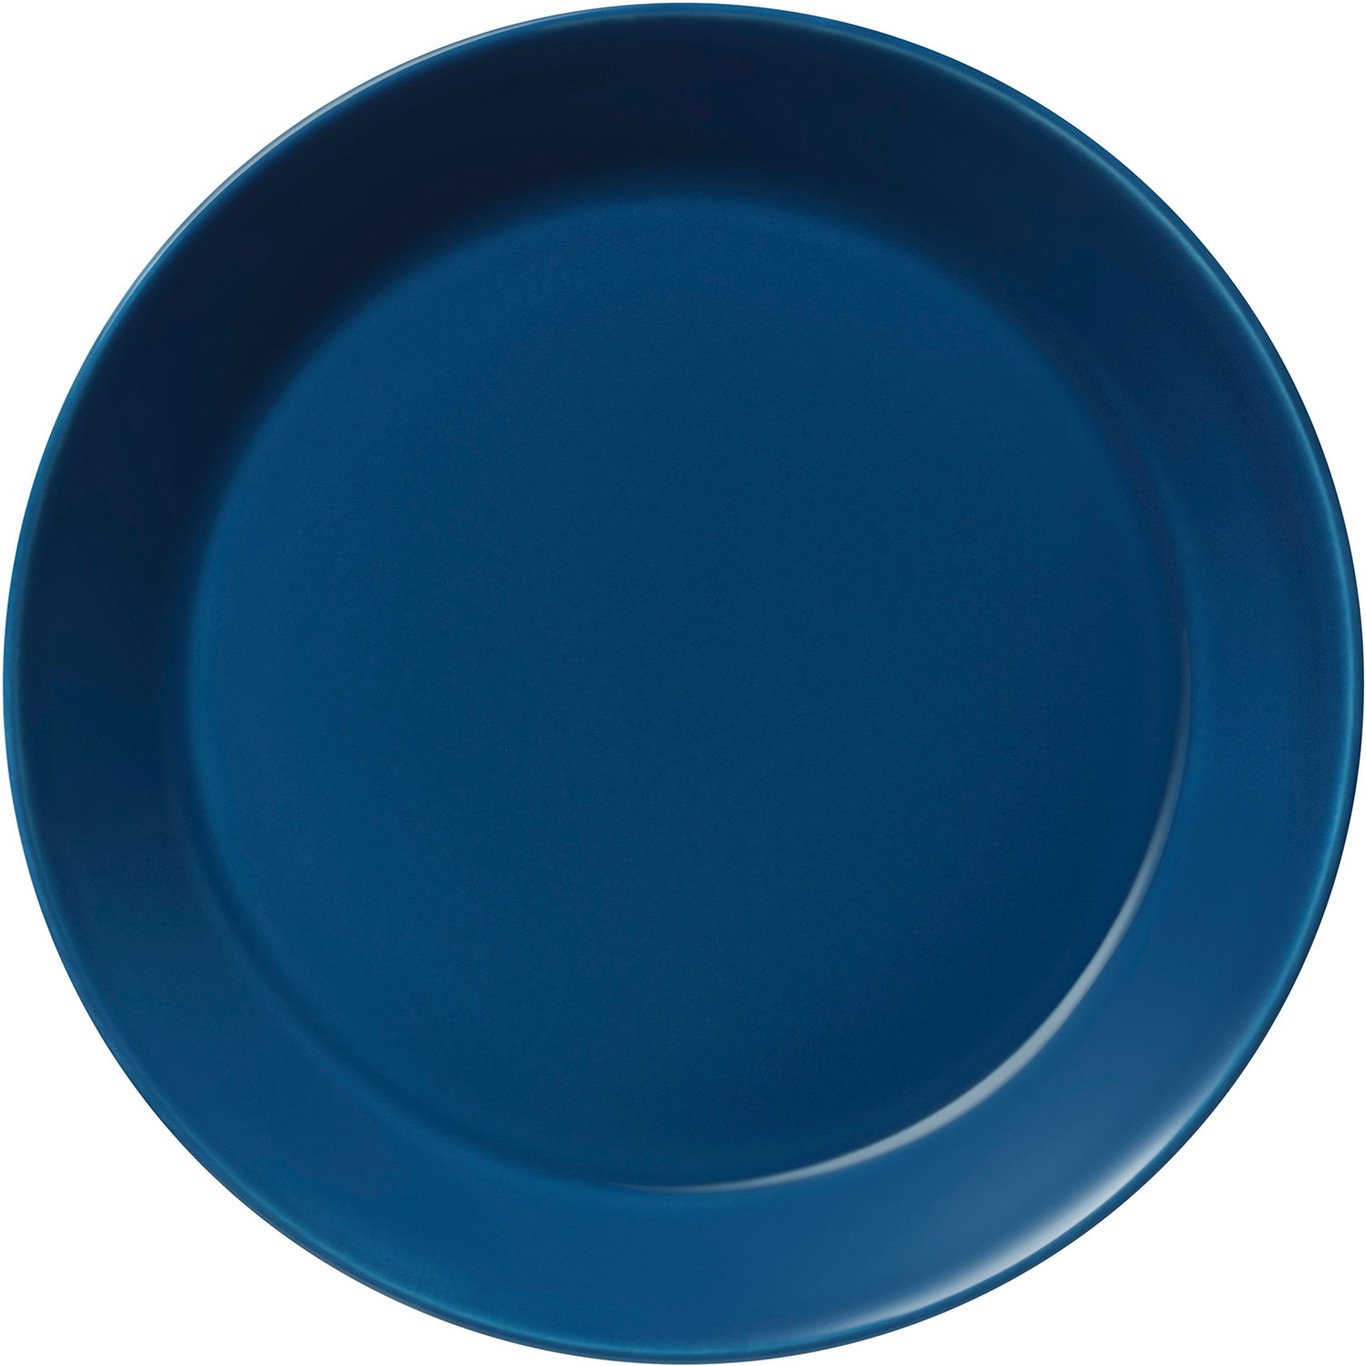 Teema plate 17 cm, Vintage Blue